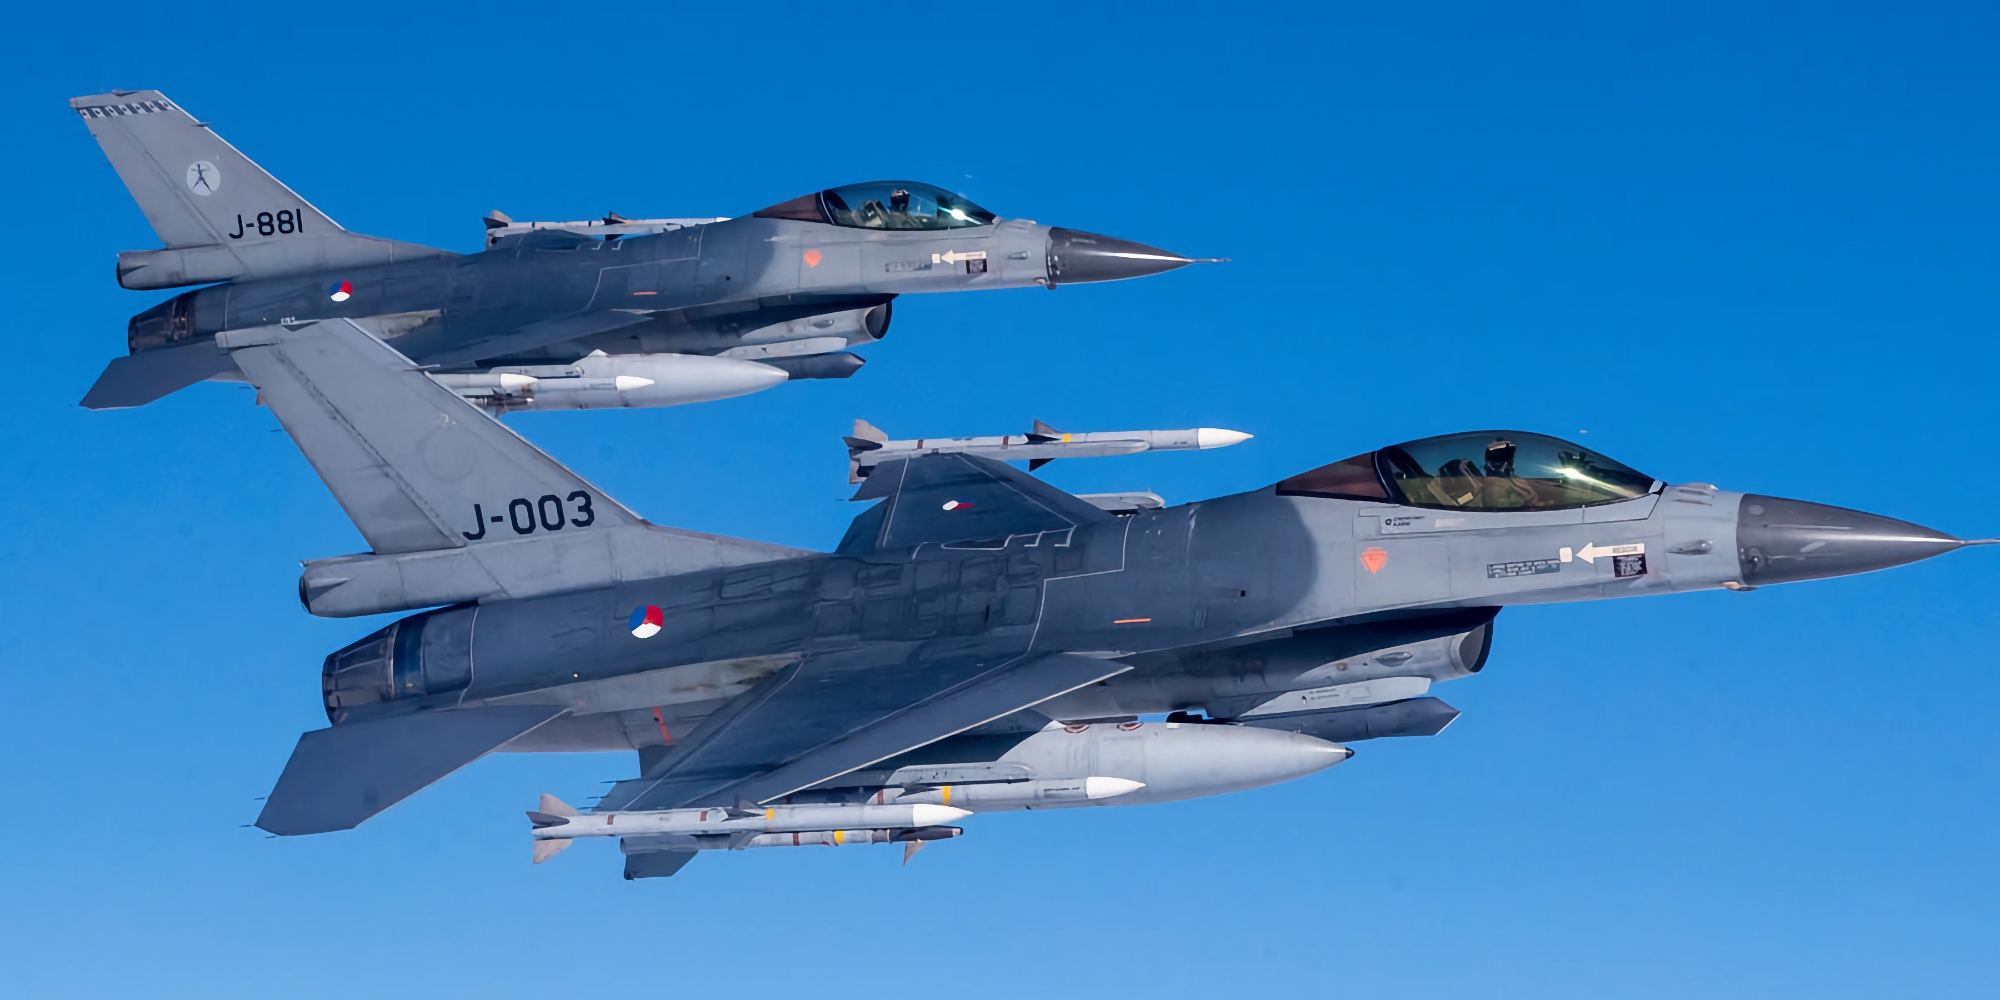 L'Ukraine soumet officiellement une demande aux Pays-Bas pour des chasseurs F-16 Fighting Falcon